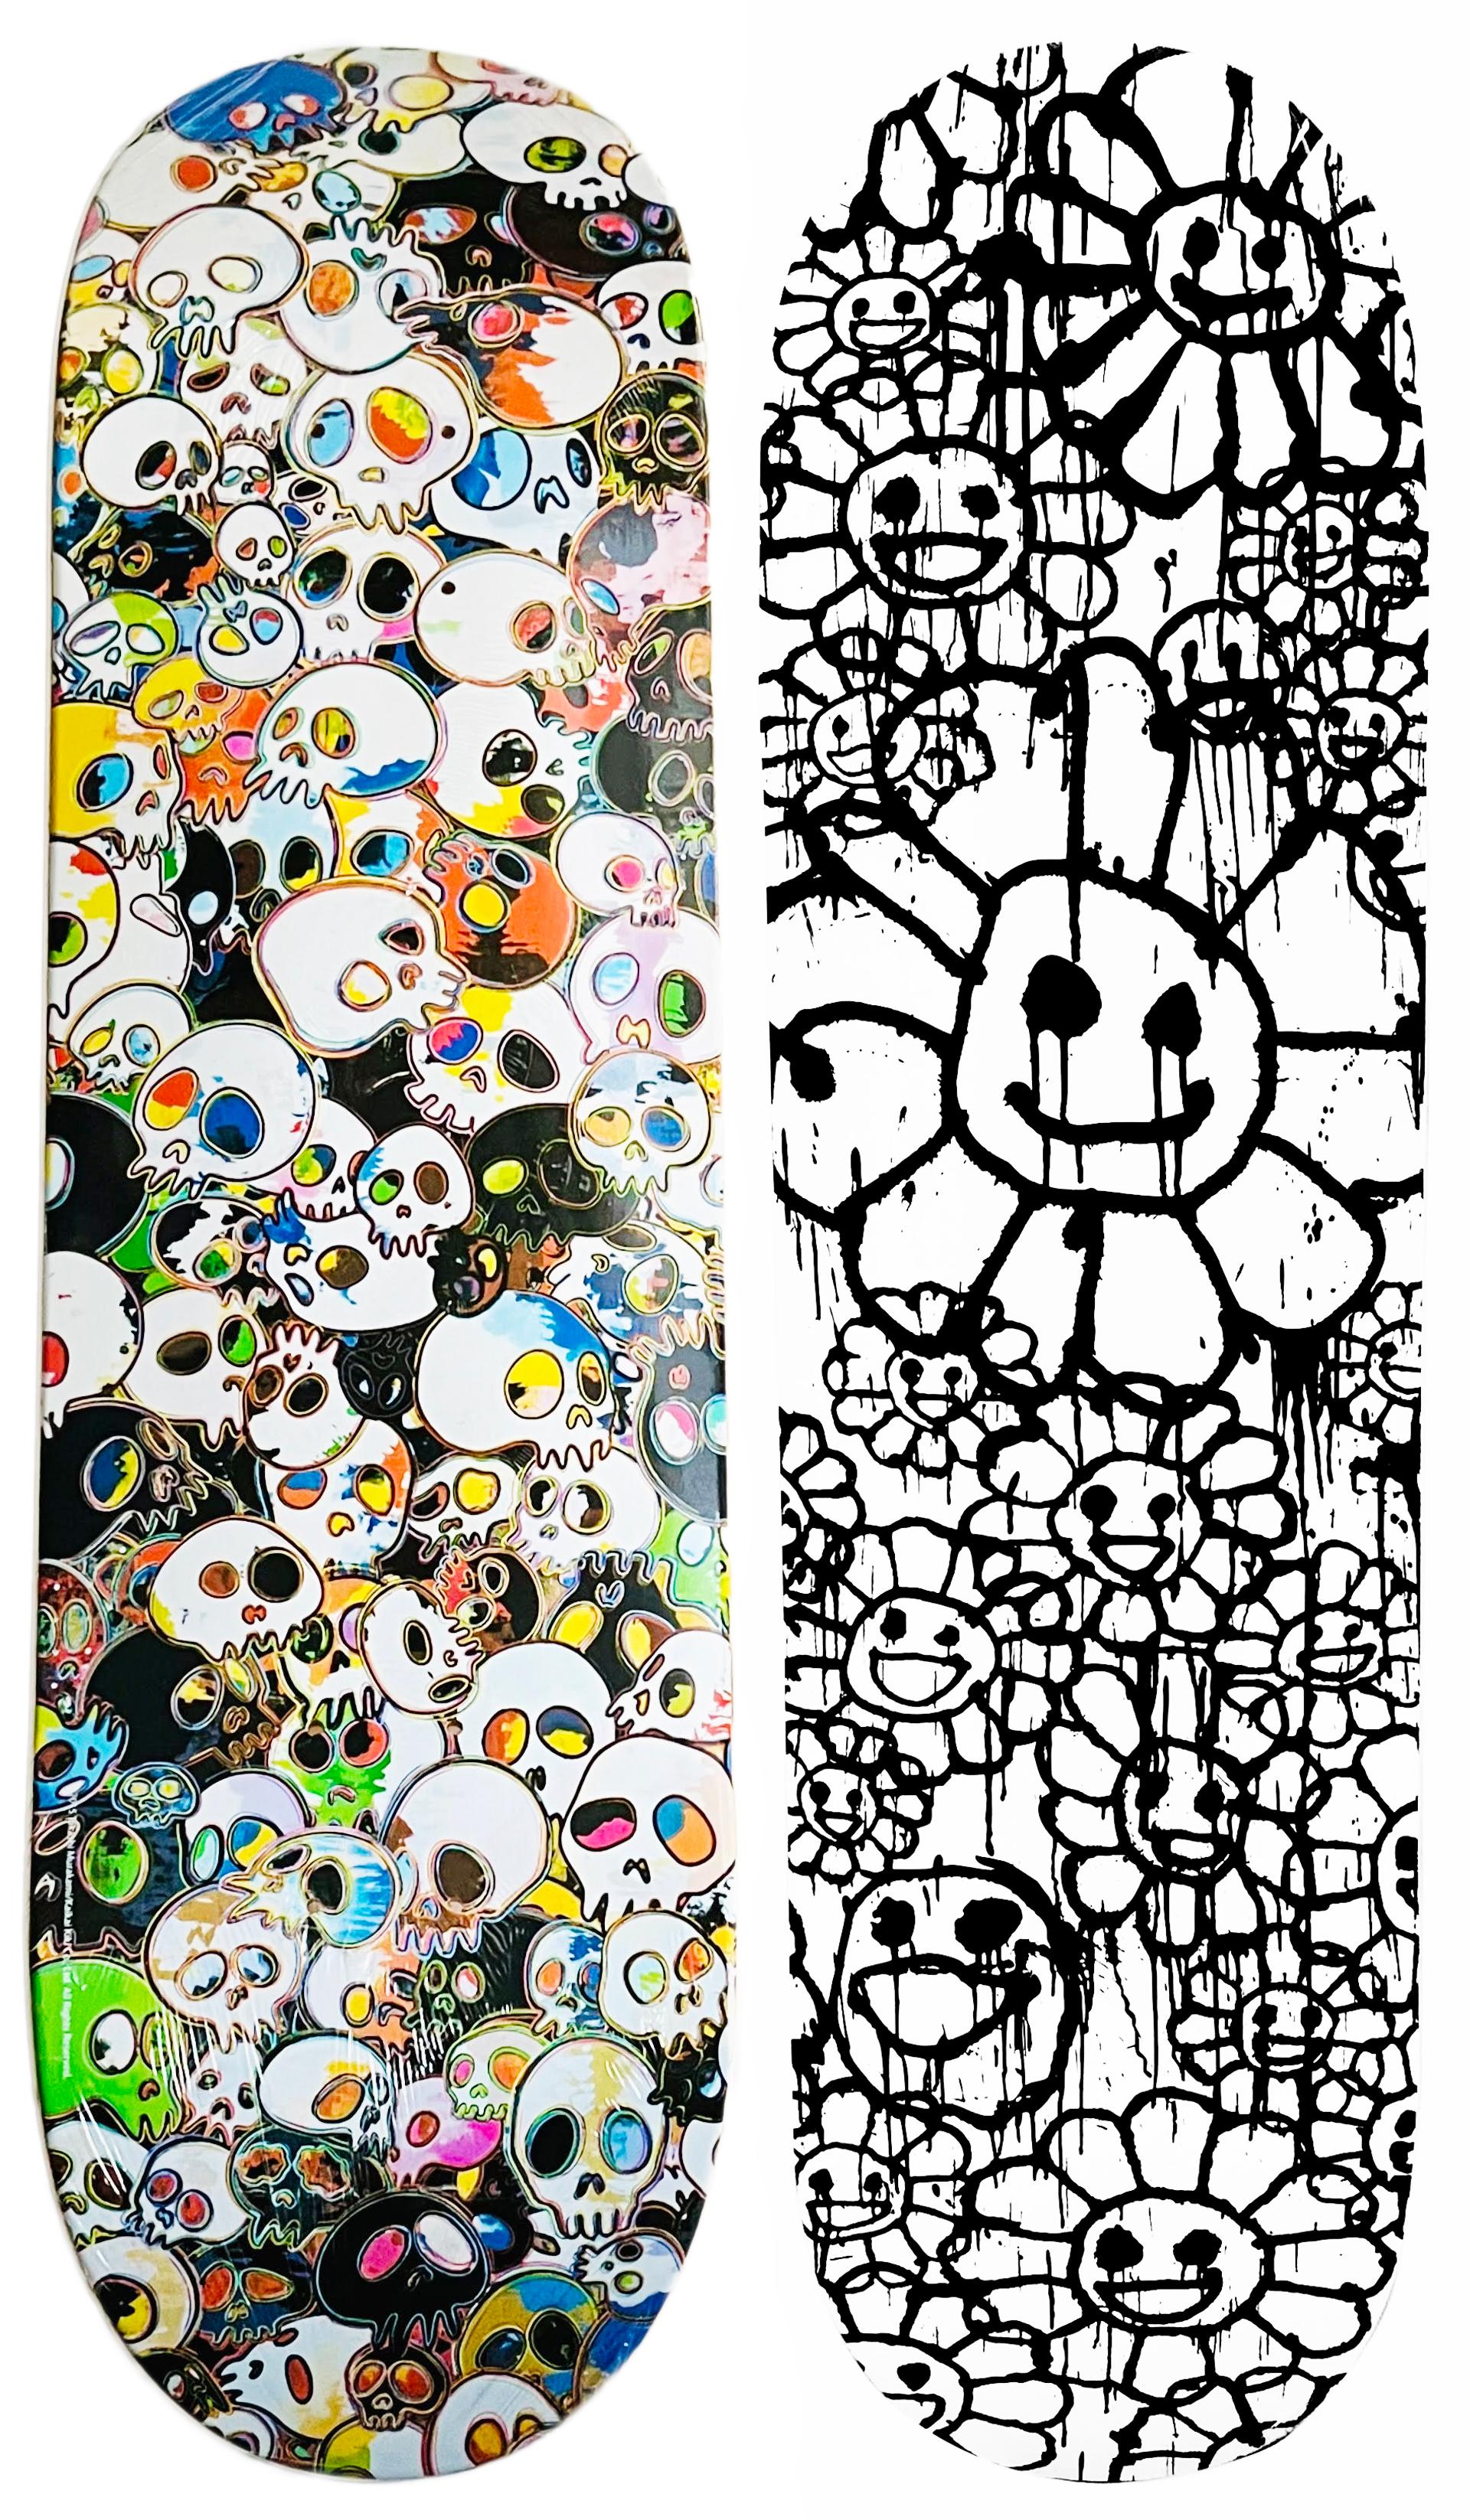 Decks de skateboard de Takashi Murakami : Lot de 2  œuvres : 2015-2017 :

Takashi Murakami Skulls Skateboard Deck 2015 : ce skateboard Murakami en édition limitée très collector a été édité en 2015 dans le cadre d'une collaboration entre Takashi